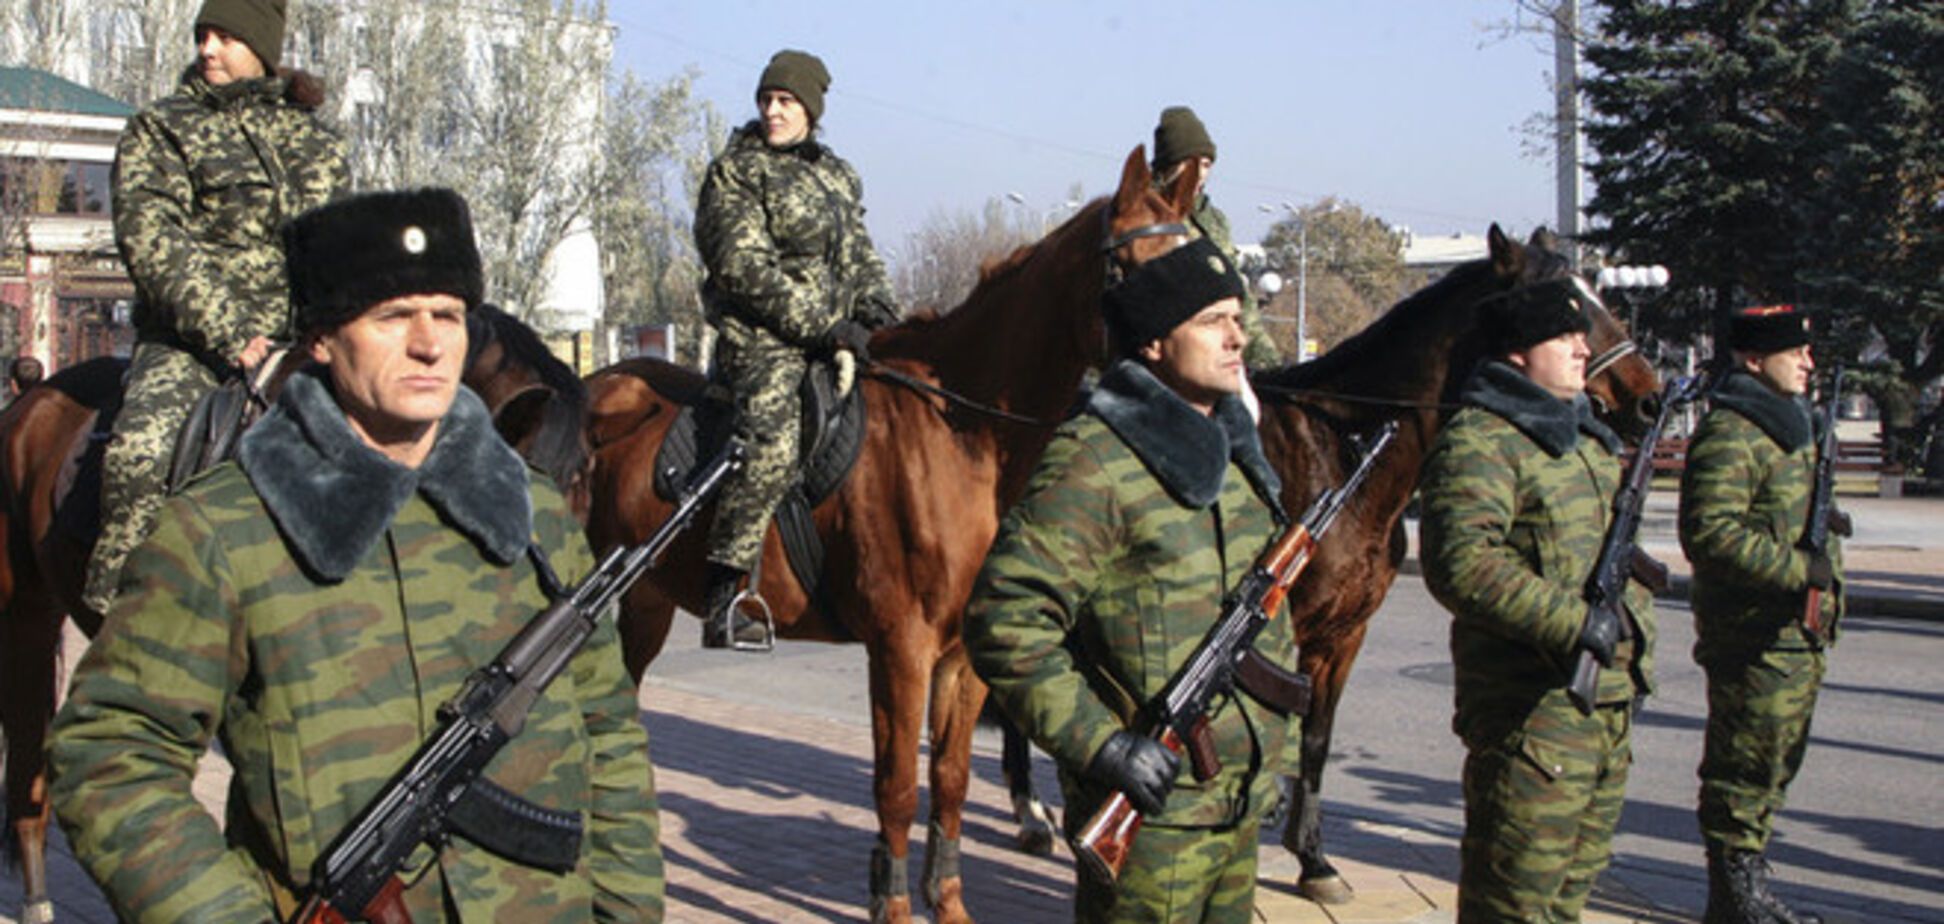 Опубликованы правила выживания в Луганске: опасайтесь соседей, молчите, будьте серой мышкой